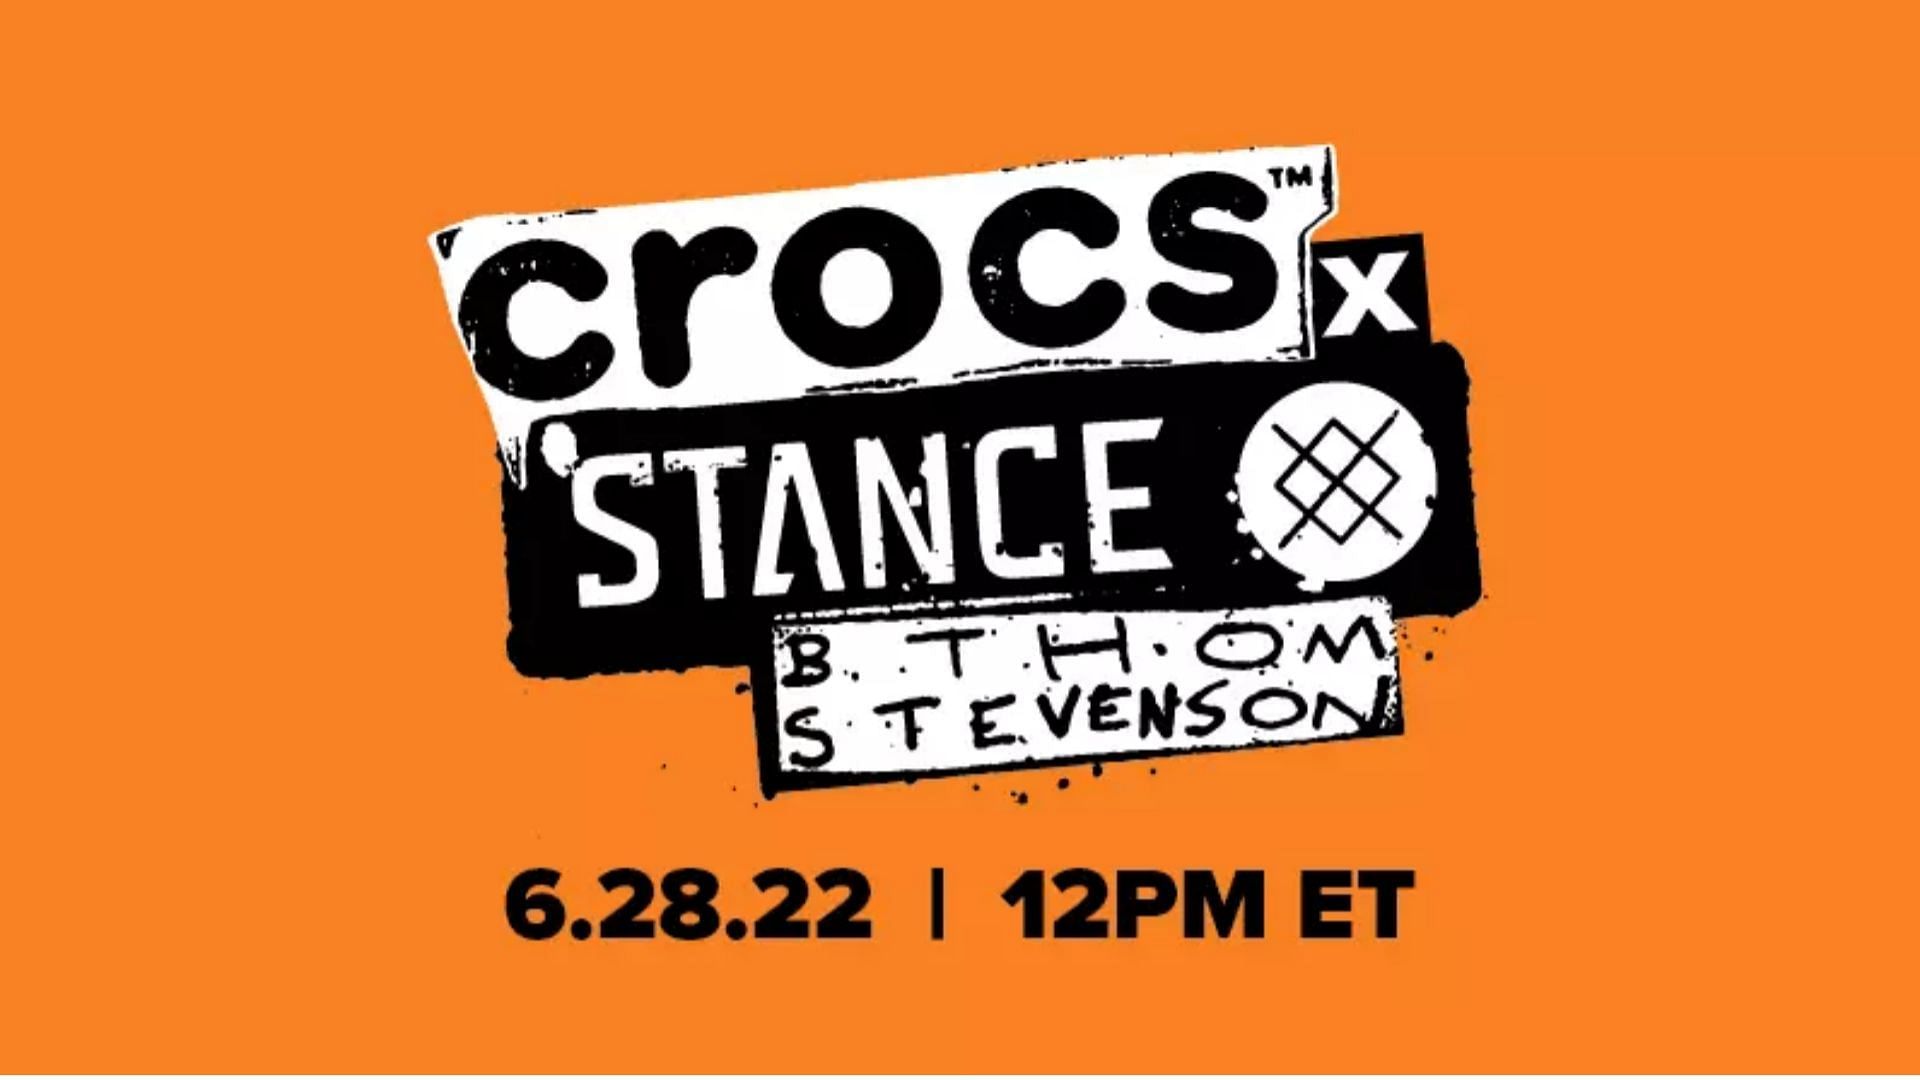 2-piece Crocs x Stance x B. Thom Stevenson collection launch date (Image via Crocs)